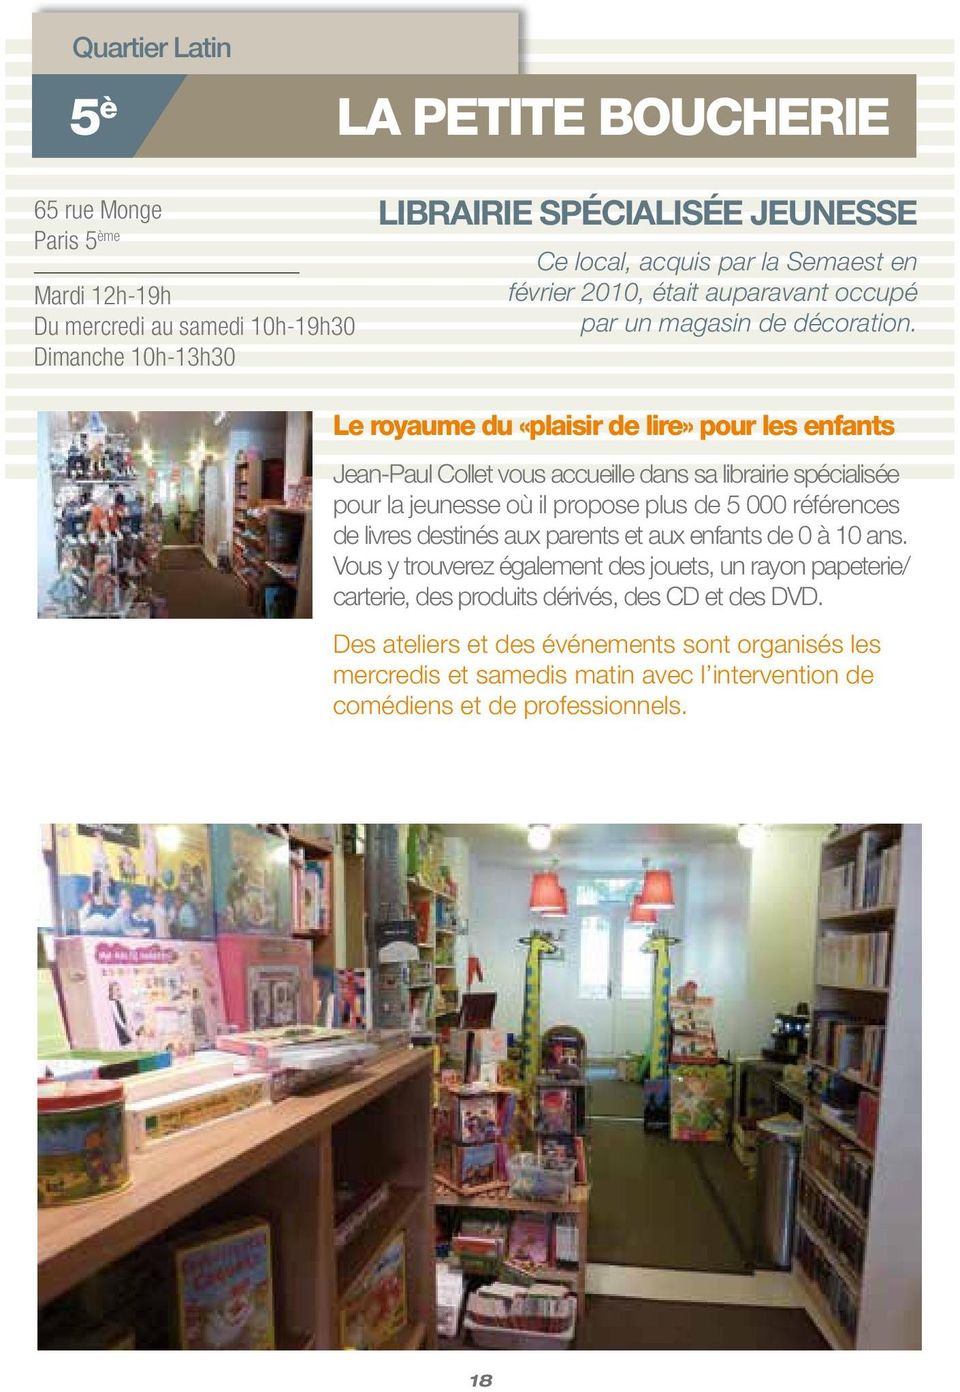 Le royaume du «plaisir de lire» pour les enfants Jean-Paul Collet vous accueille dans sa librairie spécialisée pour la jeunesse où il propose plus de 5 000 références de livres